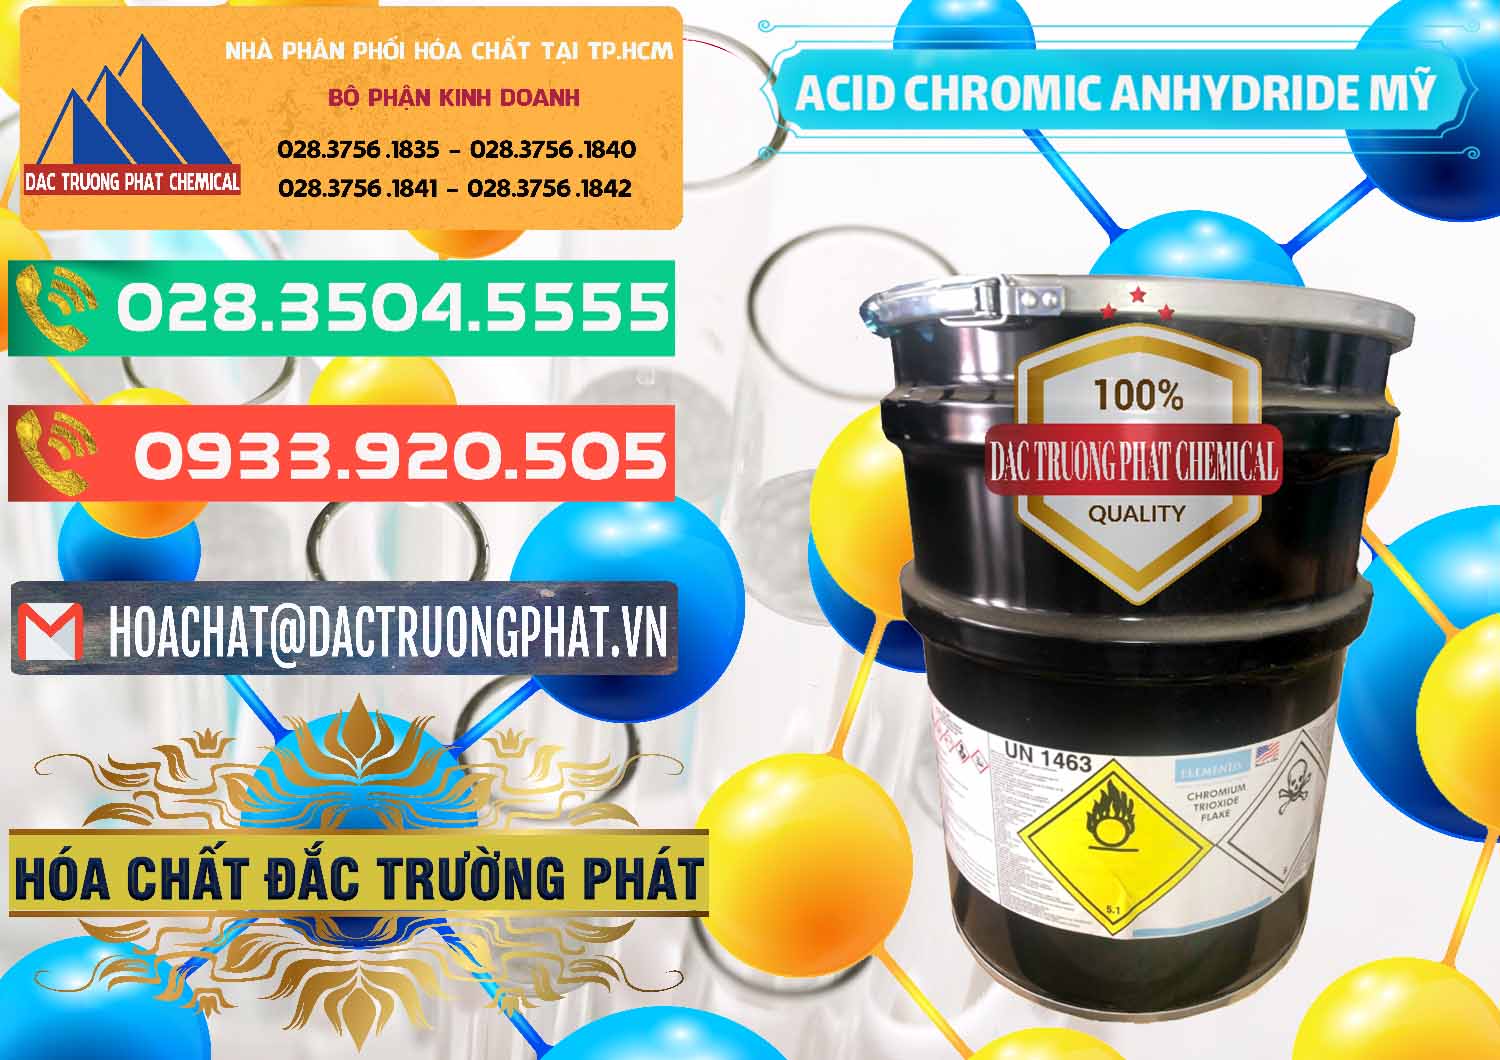 Cty bán - cung cấp Acid Chromic Anhydride - Cromic CRO3 USA Mỹ - 0364 - Nhà cung cấp _ nhập khẩu hóa chất tại TP.HCM - congtyhoachat.com.vn